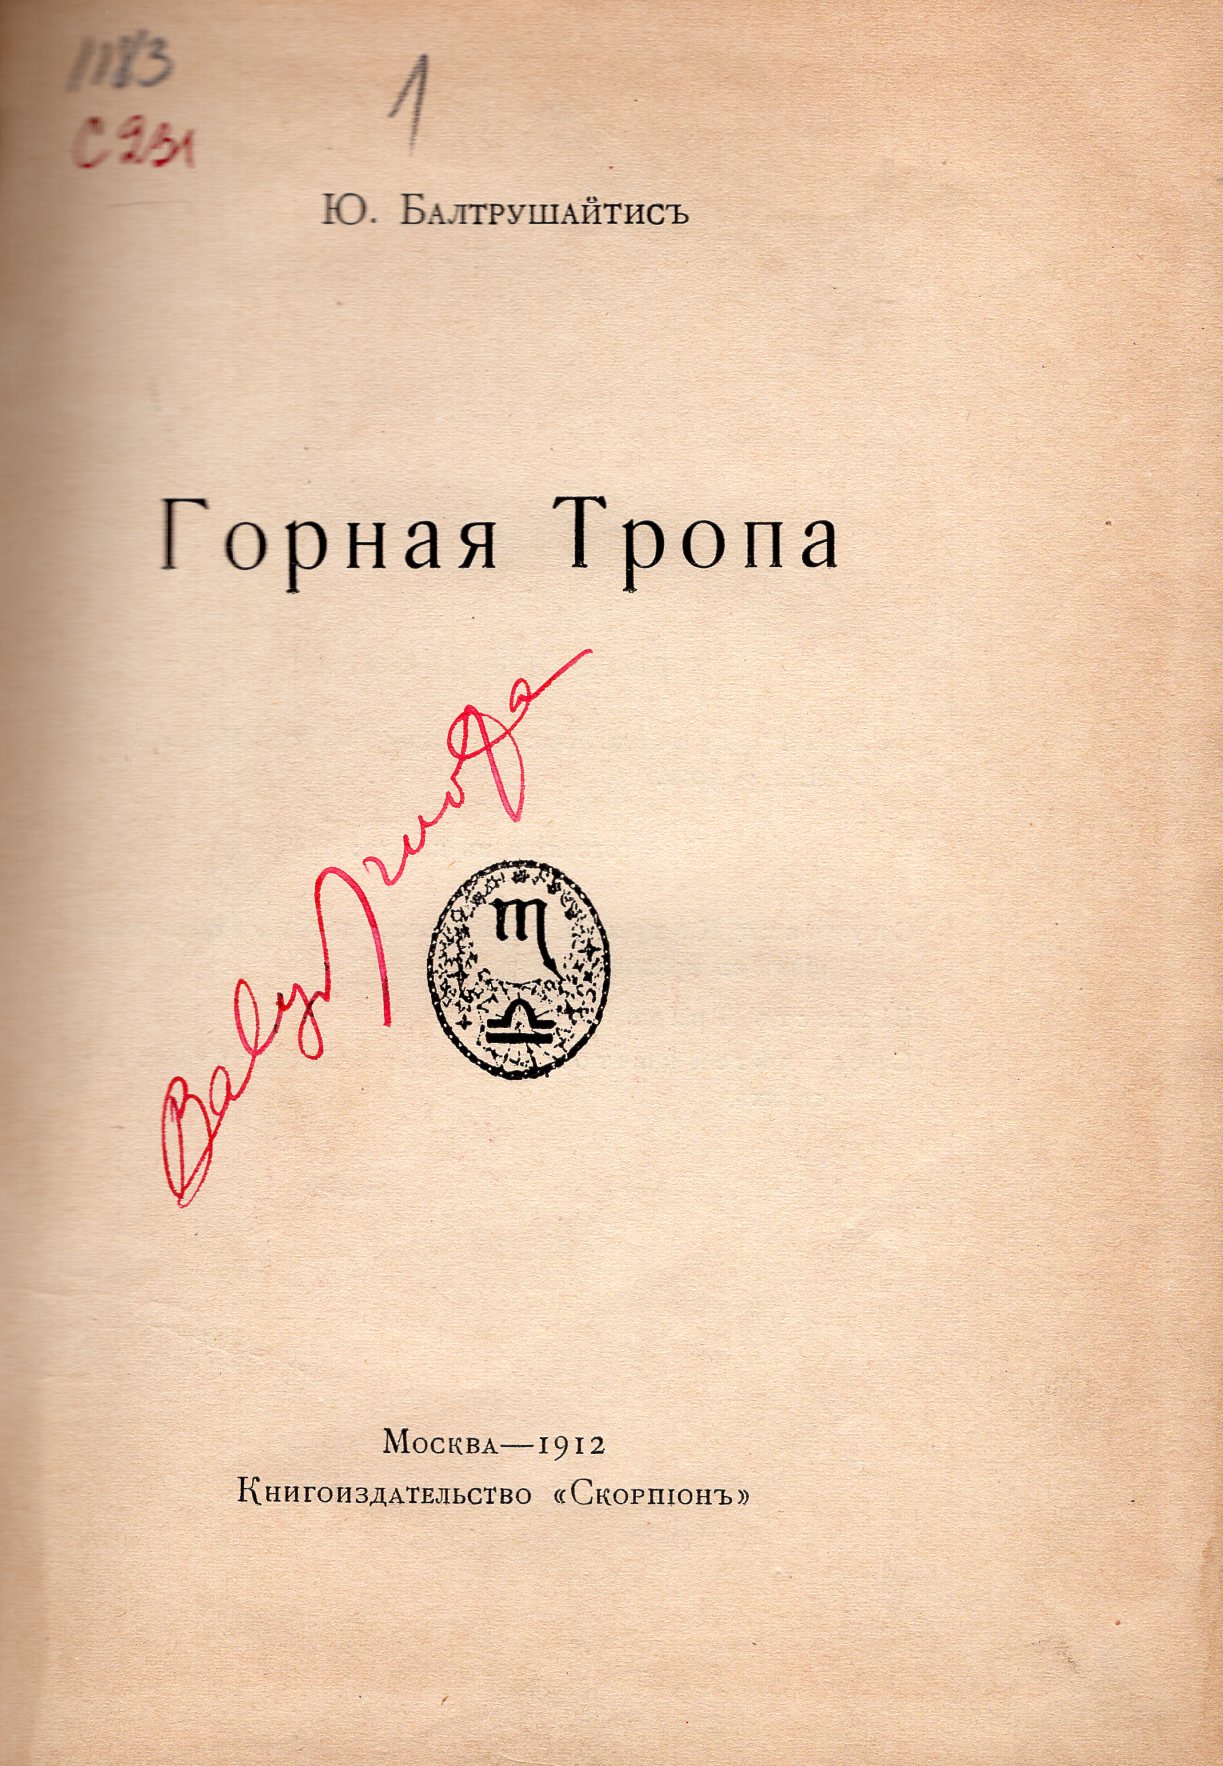 Balio Sruogos autografas. Knyga: J. Baltrušaitis. Kalnų takas. Eilėraščiai rusų kalba. Maskva: „Skorpion“, 1912 m. leidykla. MLLM 109021